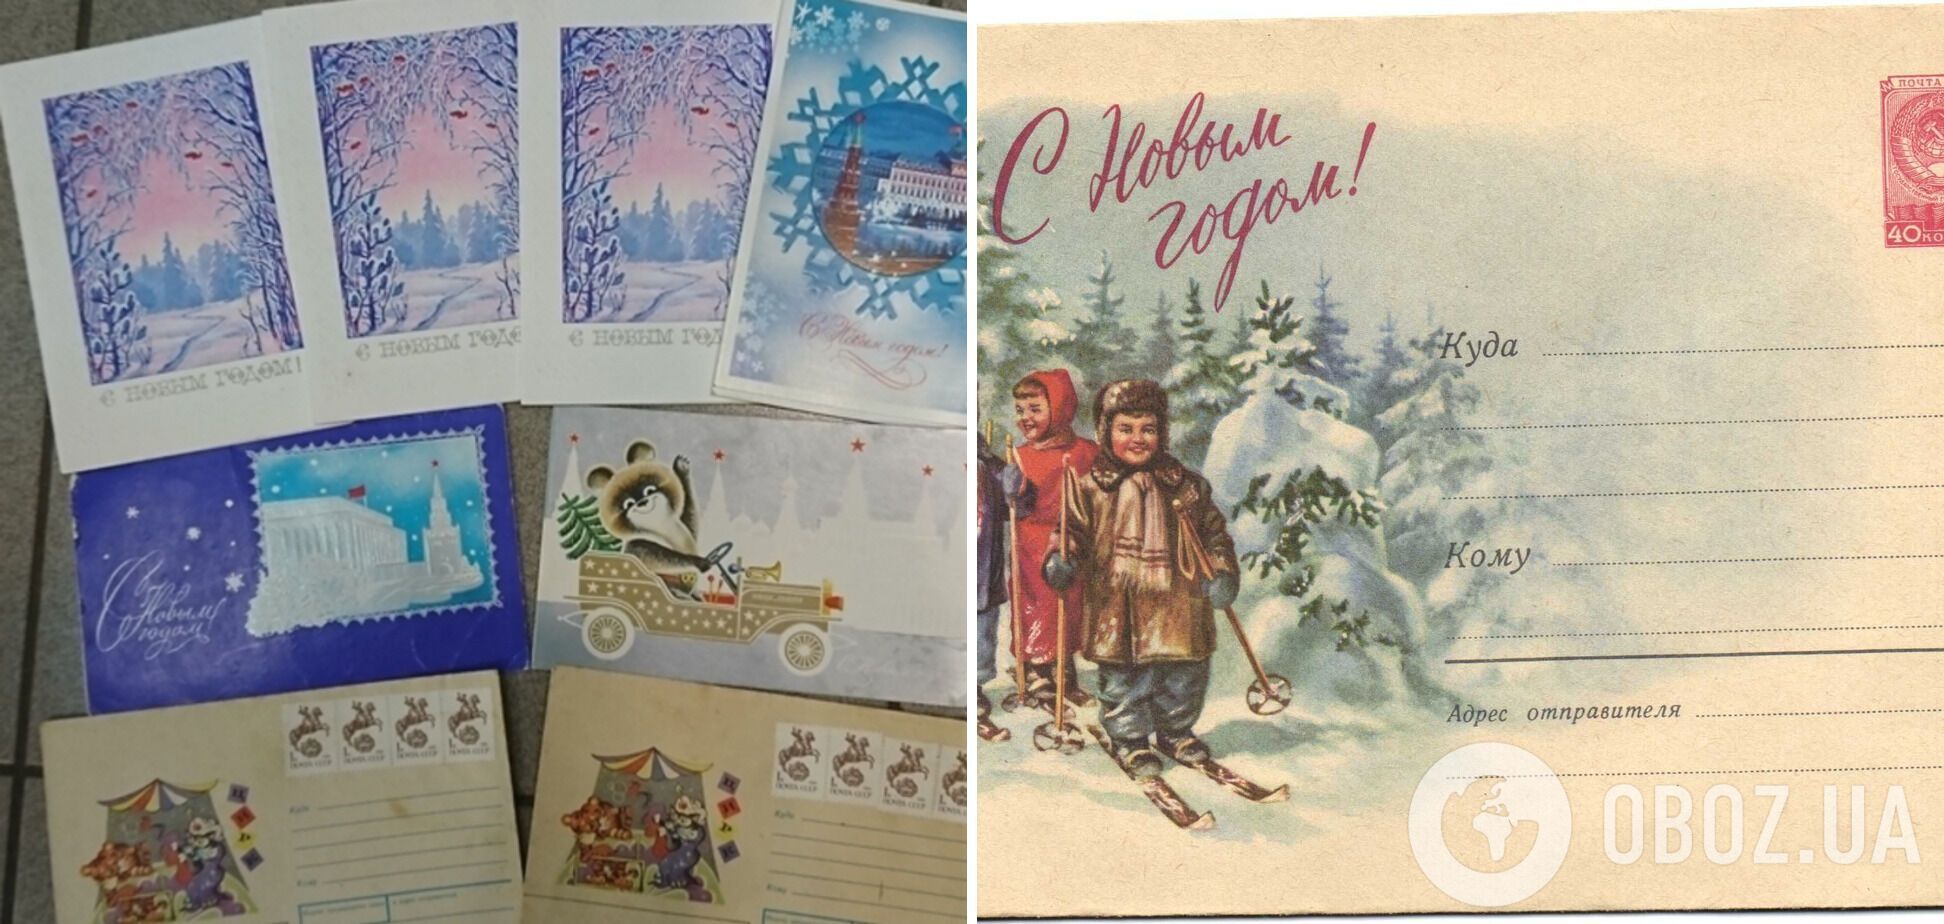 На Новый год присылали открытки по почте.